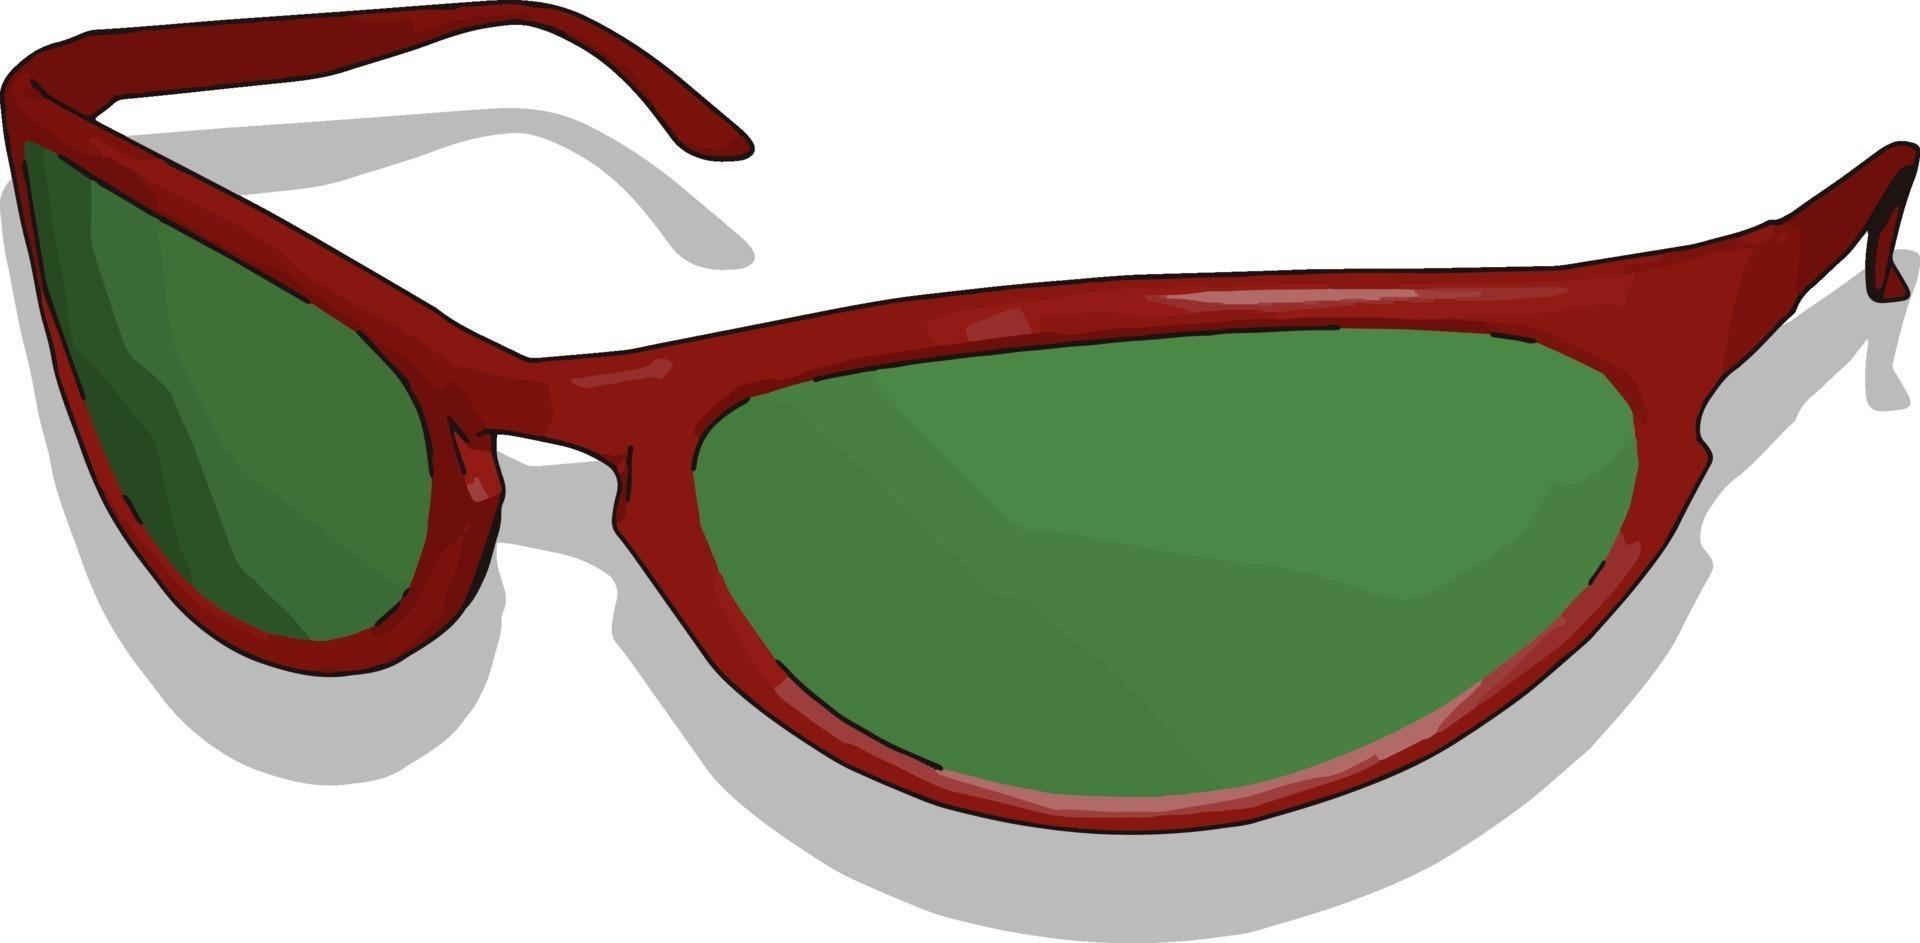 lunettes de soleil rouges, illustration, vecteur sur fond blanc.